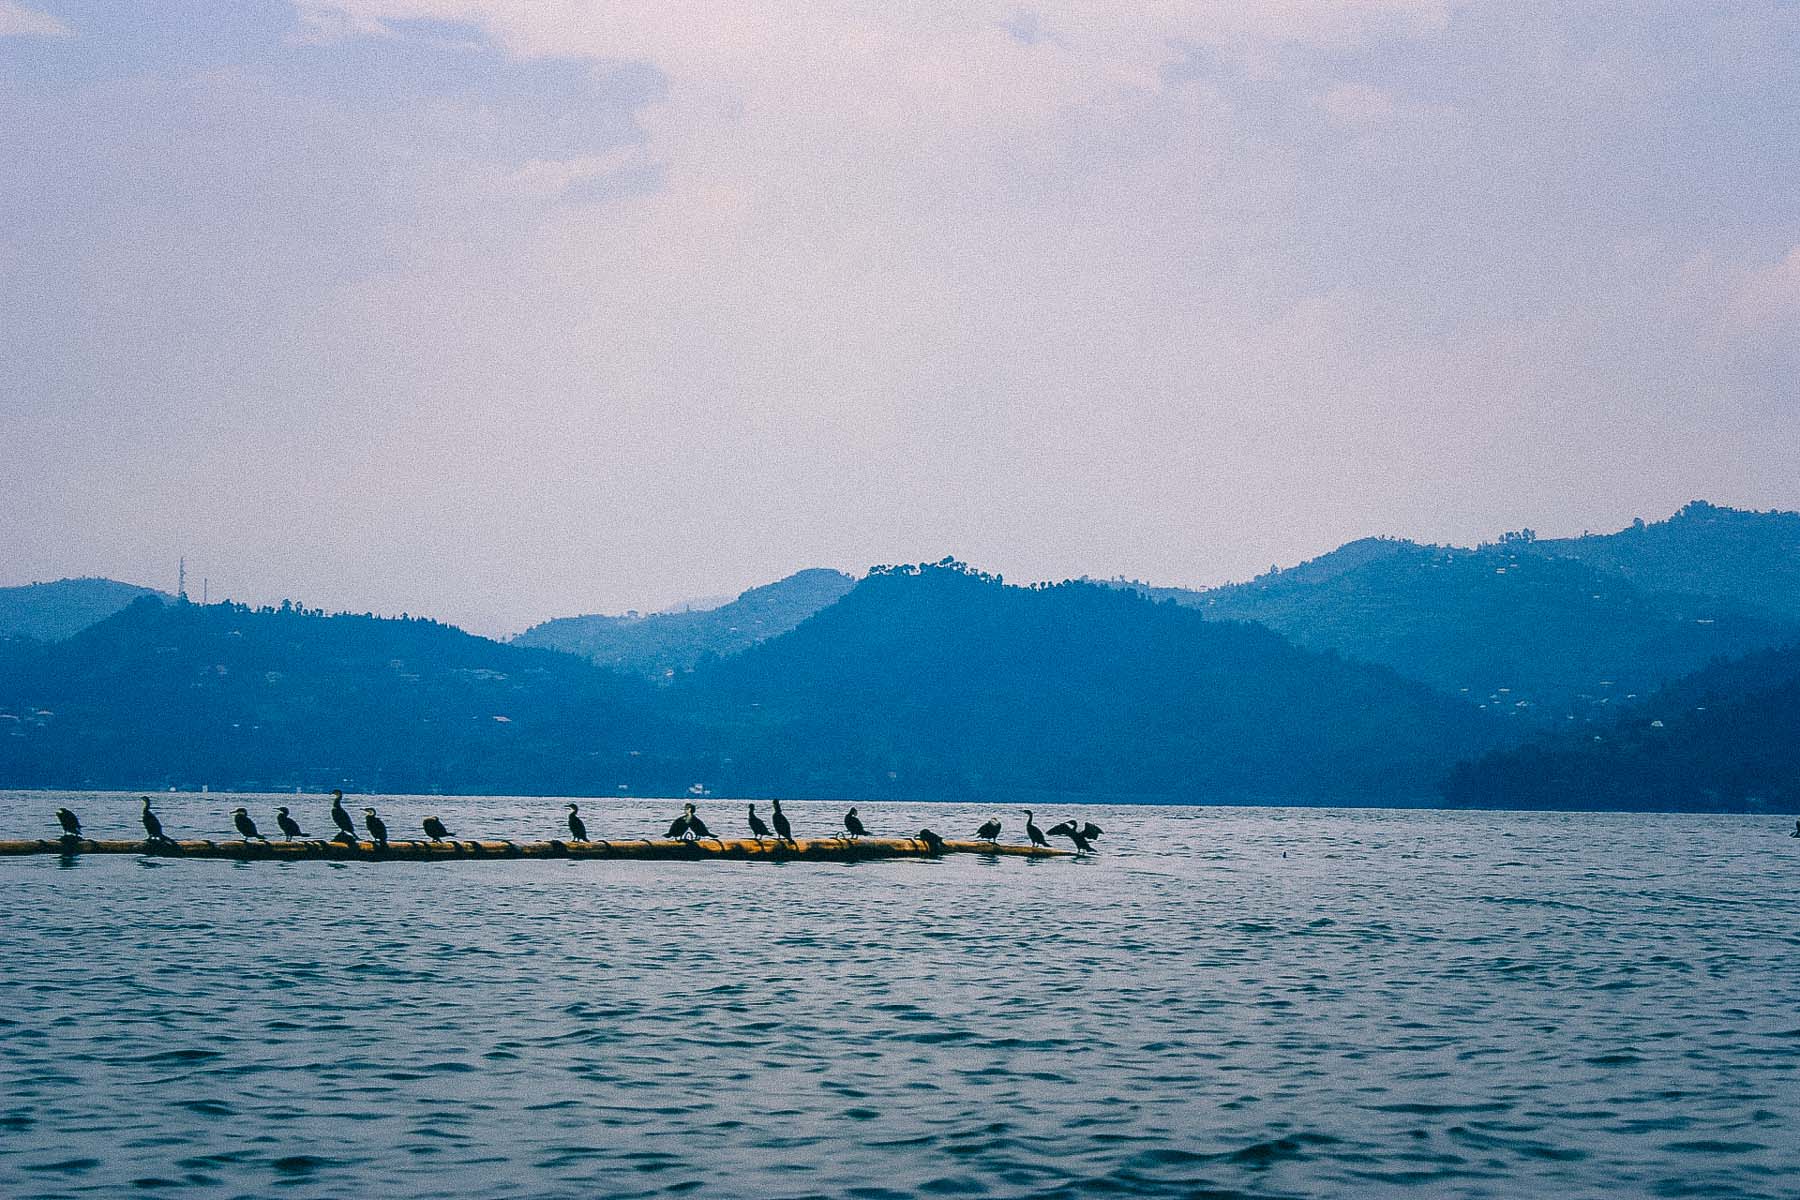 Lake-Kivu-Rwanda